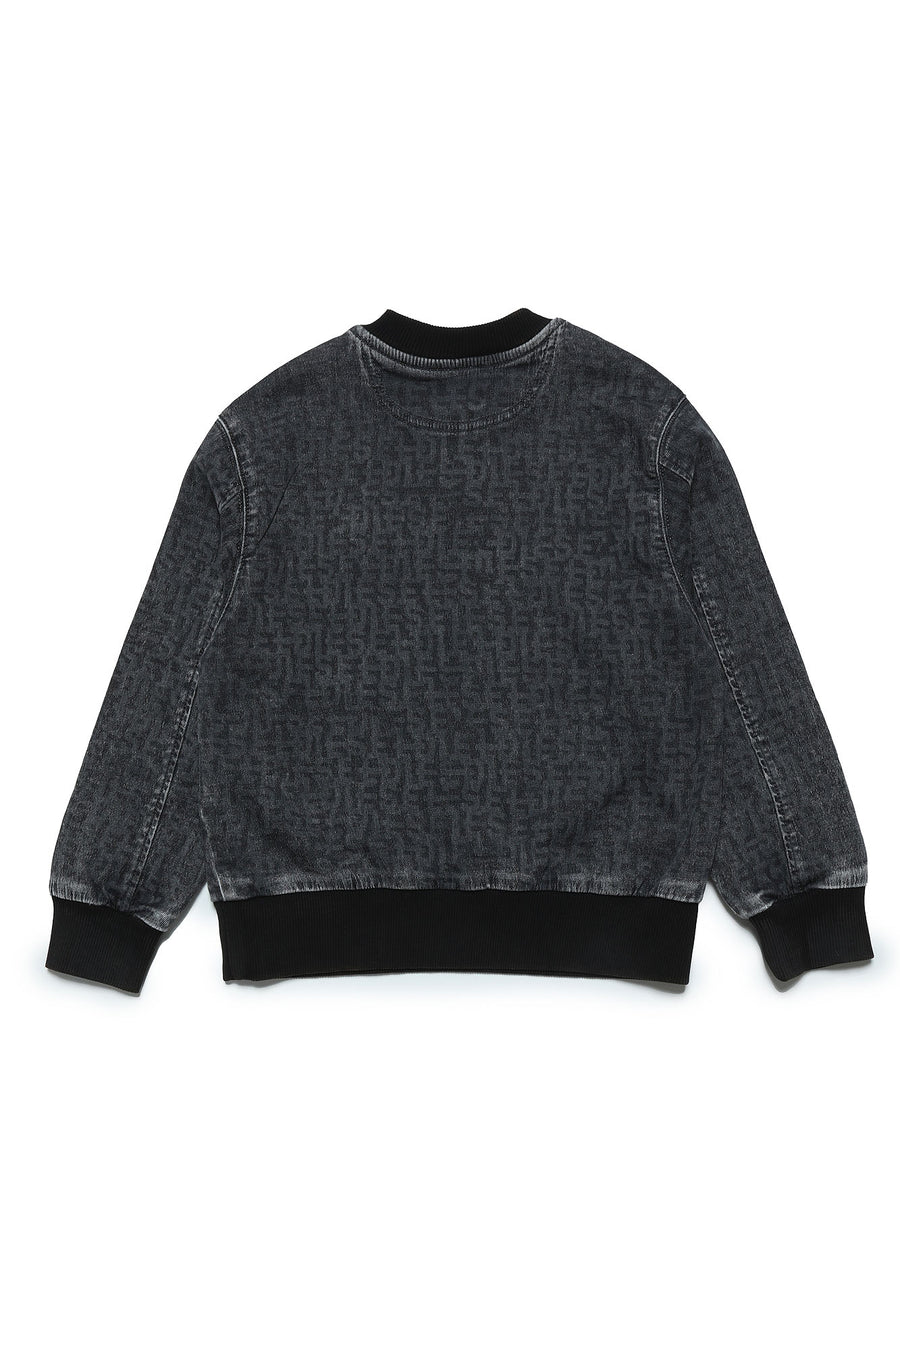 Denim black sweatshirt by Diesel